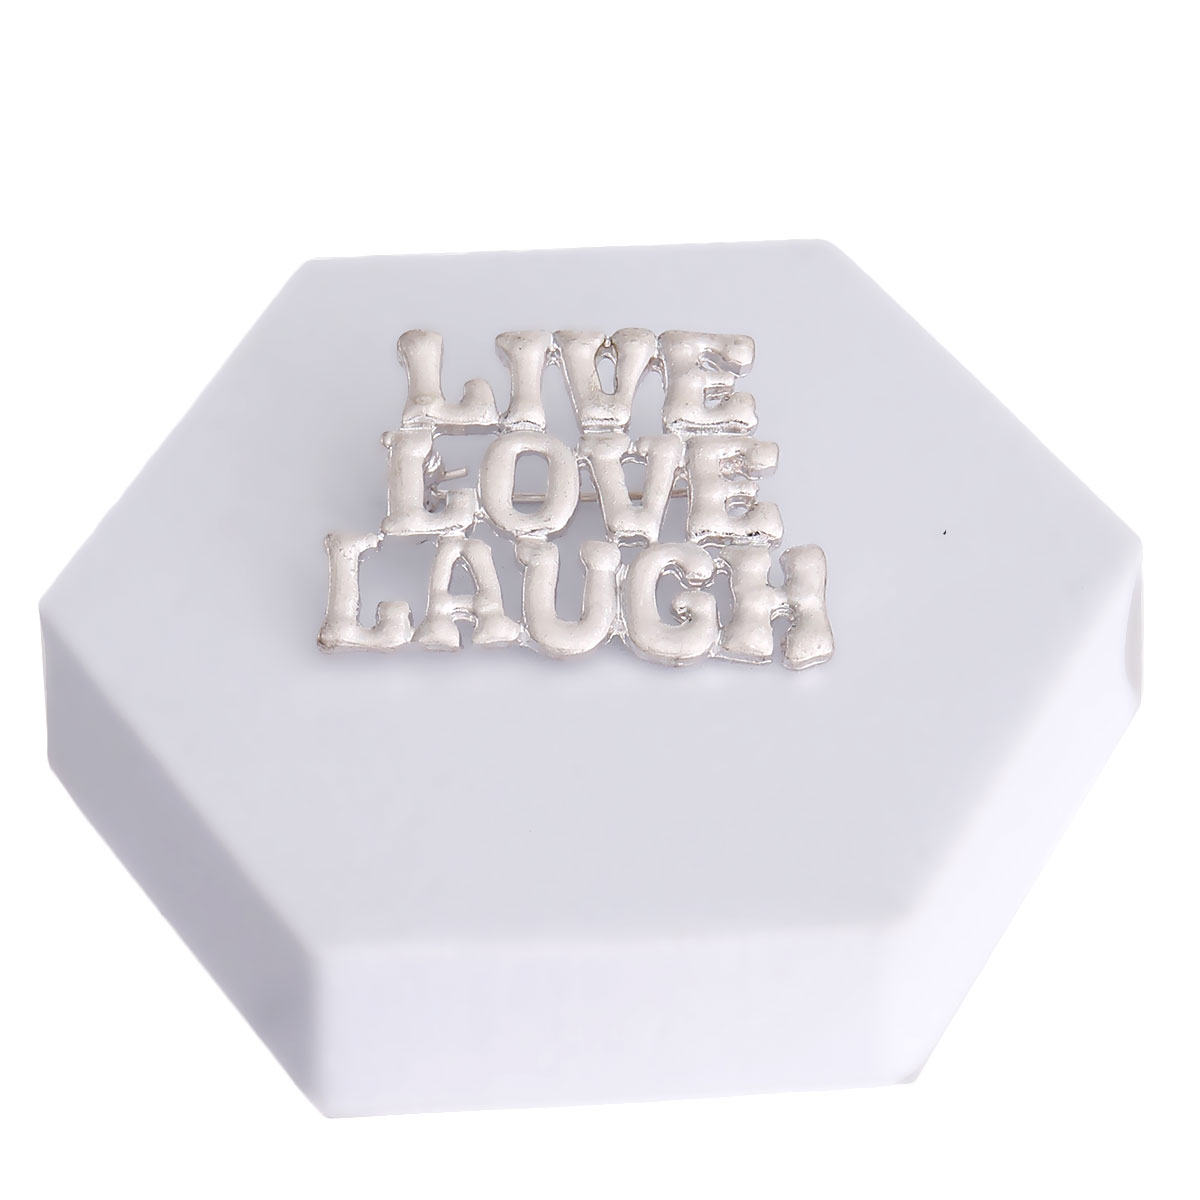 LIVE LOVE LAUGH Silver Pin